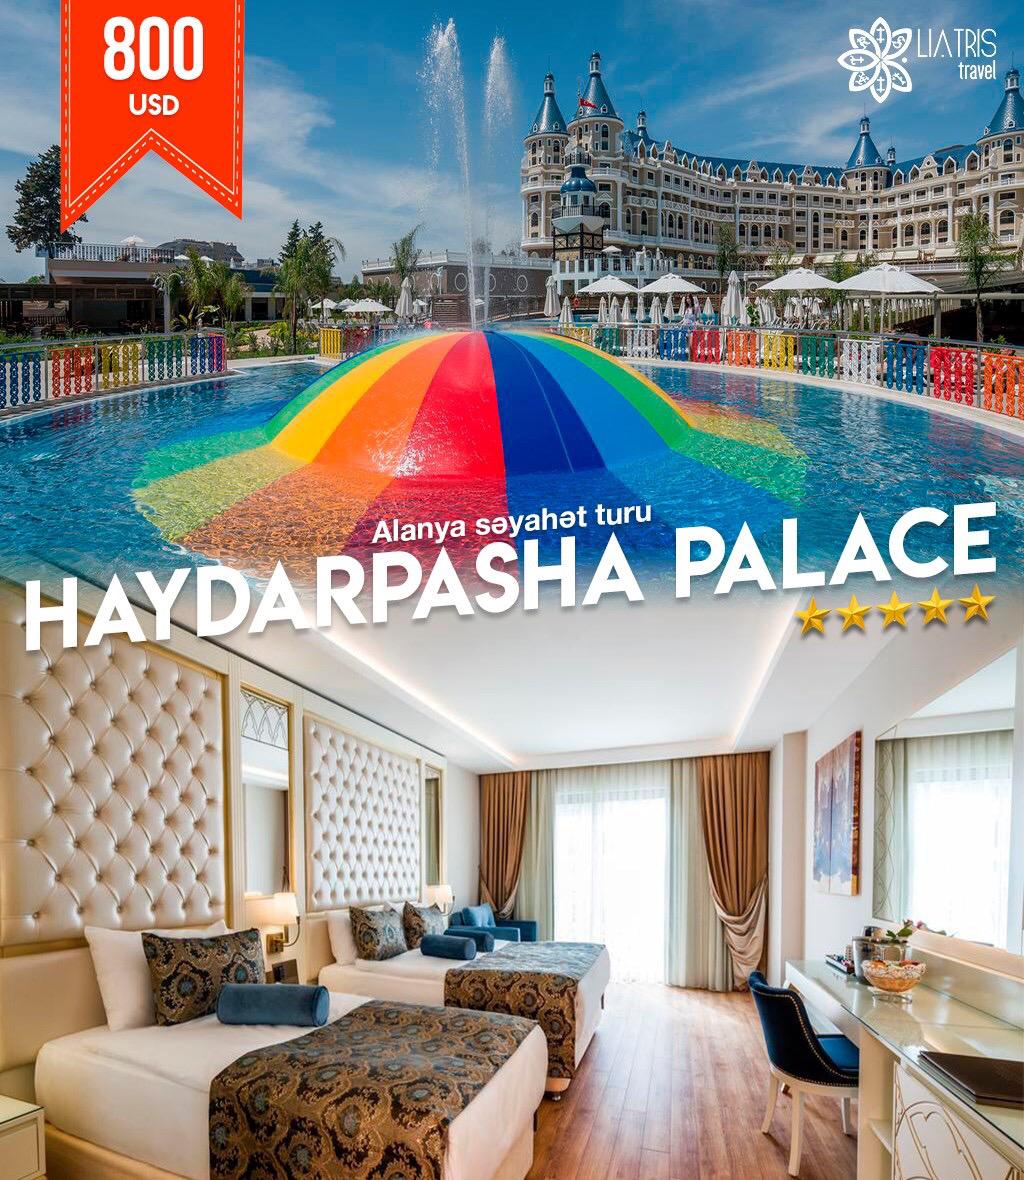 HAYDARPASHA PALACE 5*